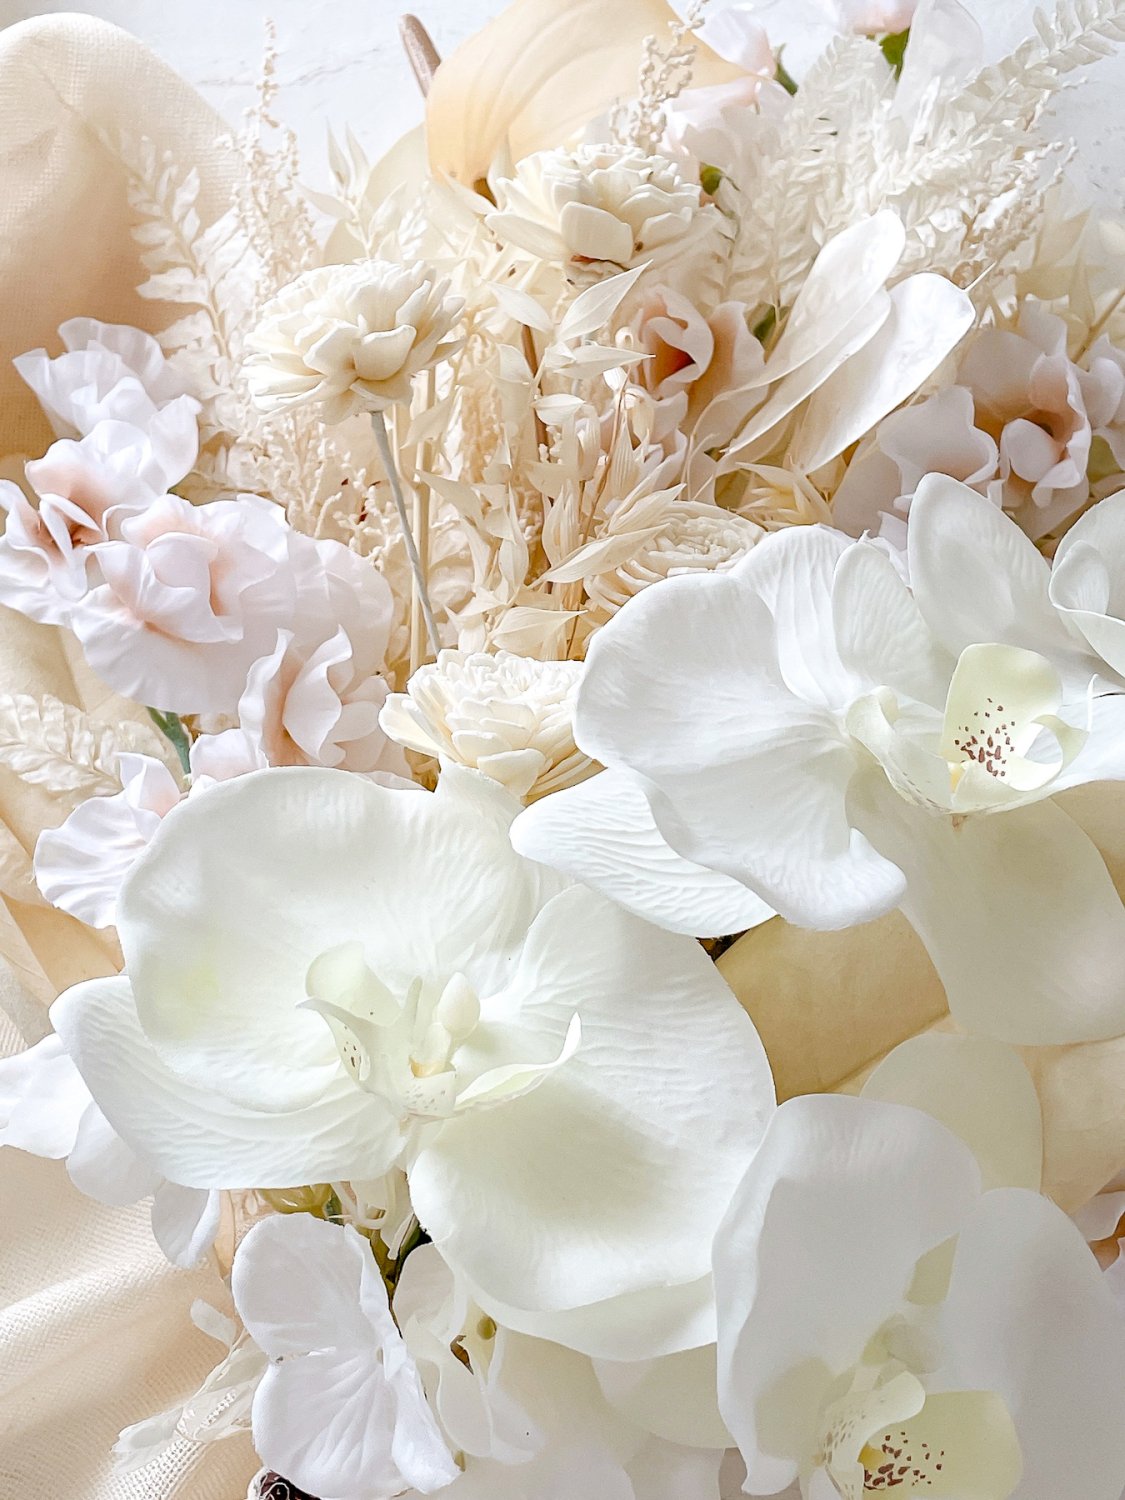 スワッグブーケ/胡蝶蘭 ホワイト | ナチュラルな白い胡蝶蘭のウェディングブーケ - airaka｜花飾りのアトリエ